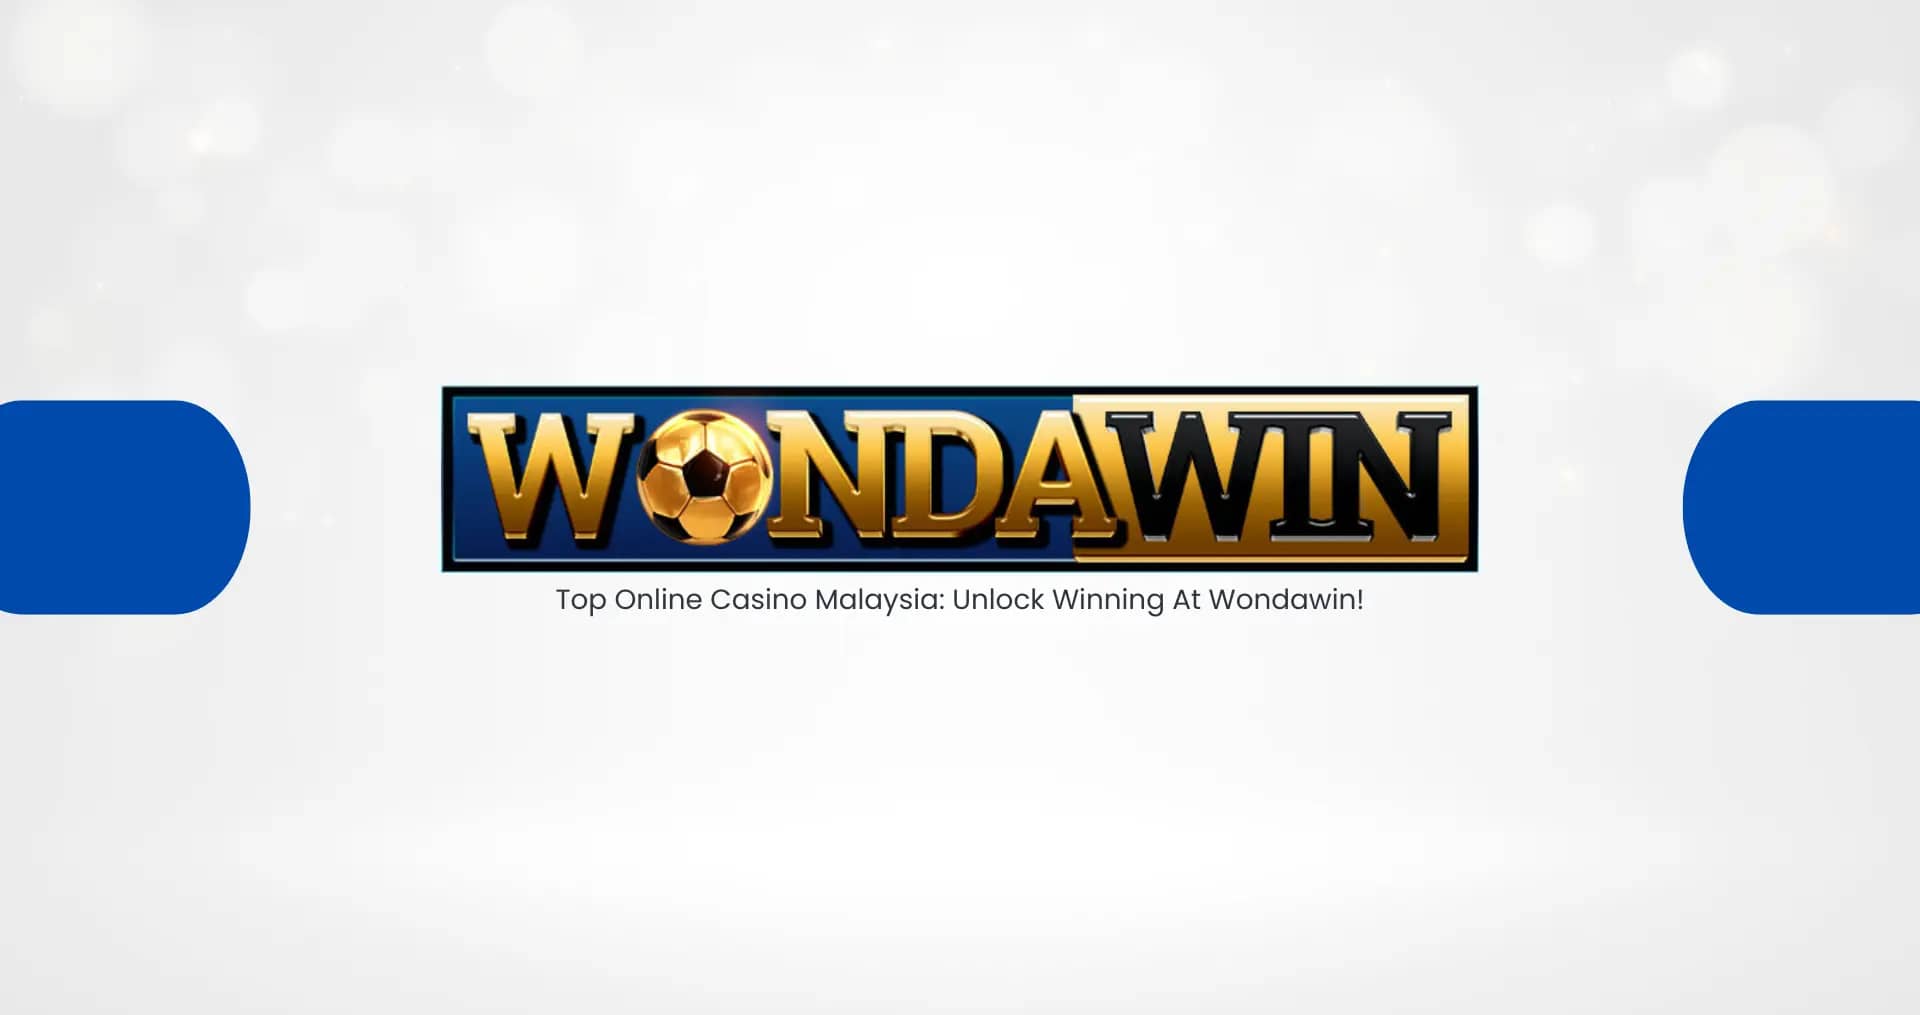 Top Online Casino Malaysia: Unlock Winning At Wondawin!